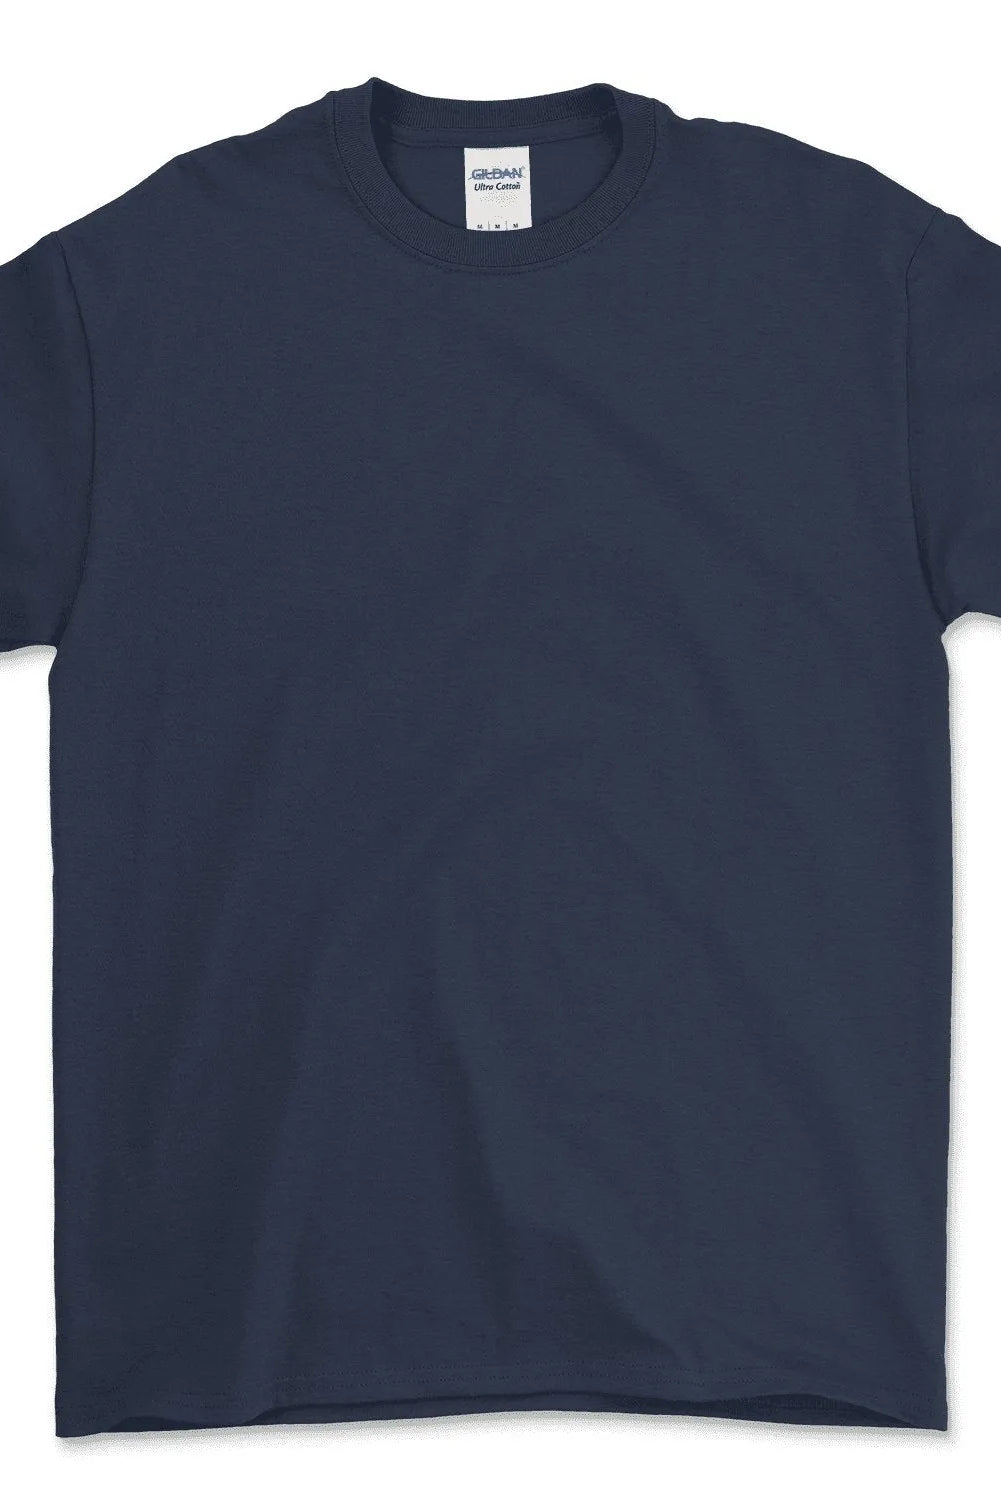 Ultra Cotton® Youth T-Shirt - 2000B - Print Me Shirts